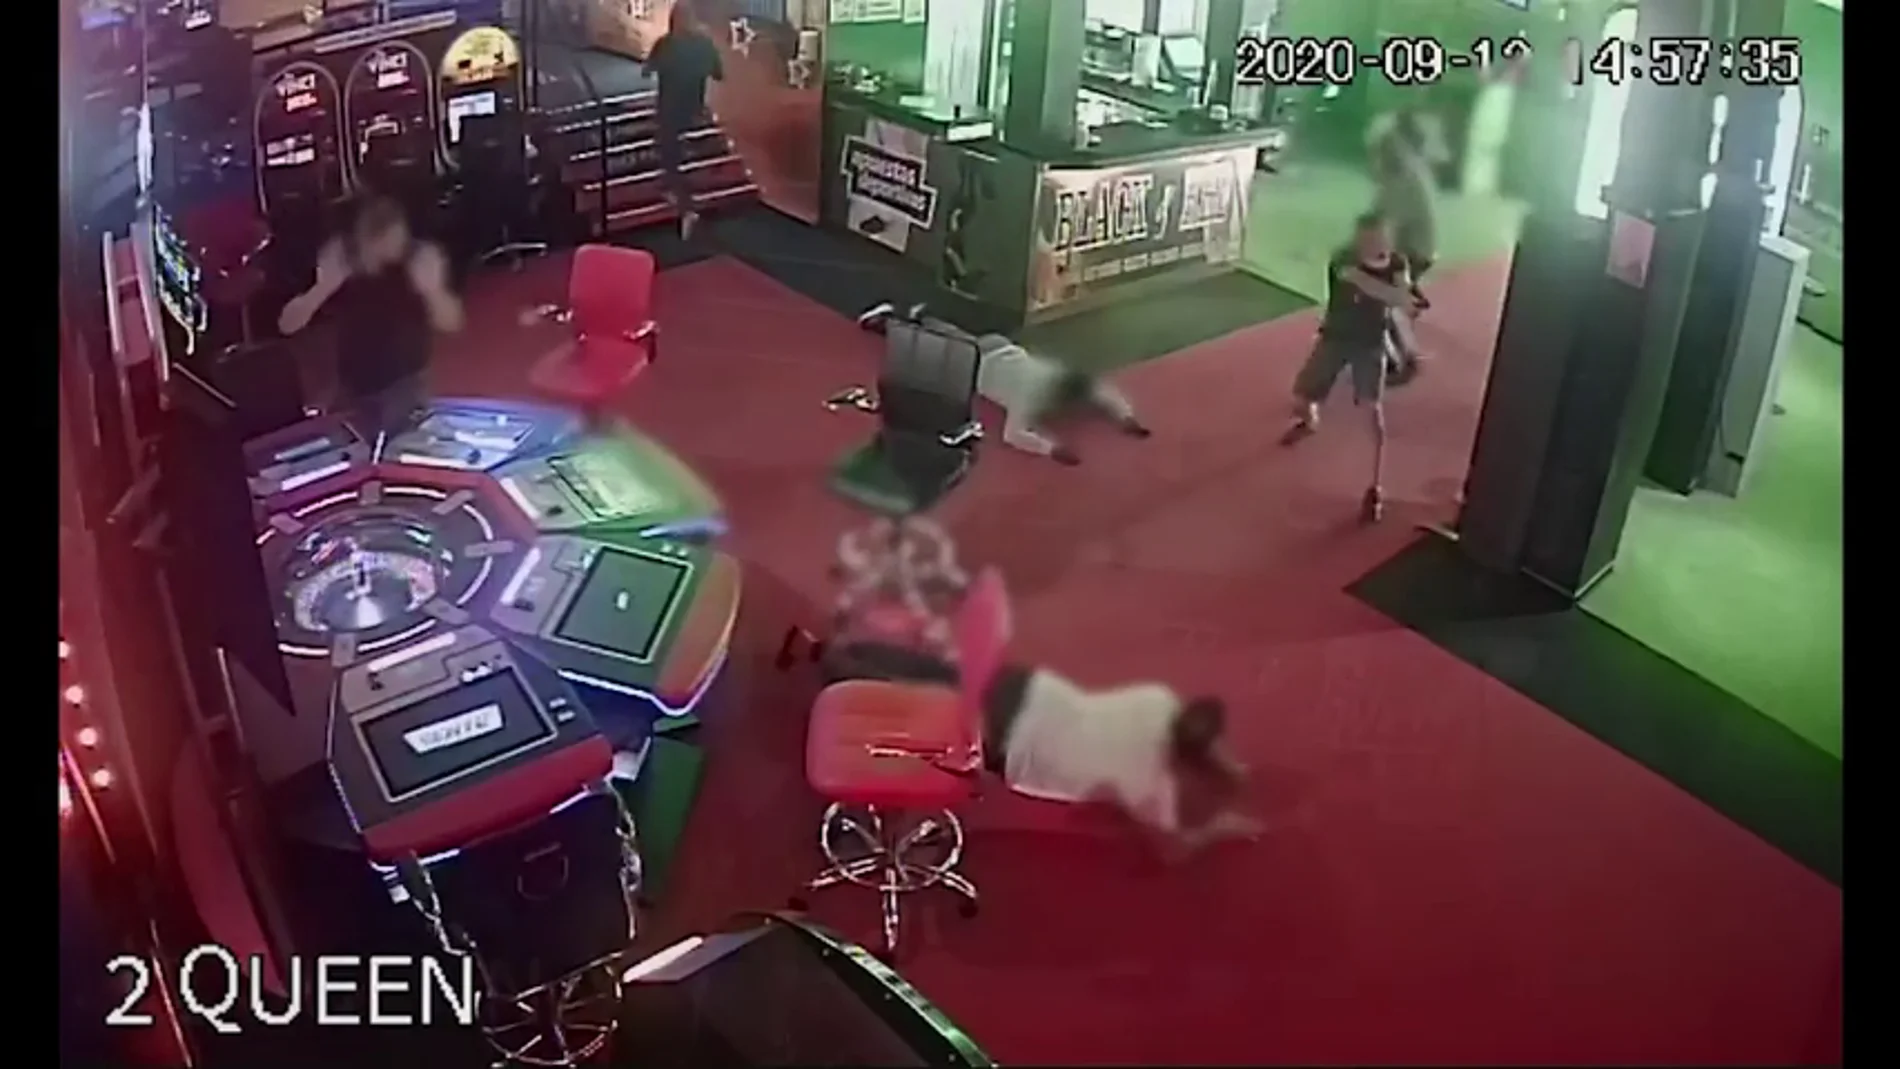 La Guardia Civil frustra un atraco a mano armada en un casino de Tenerife: el espectacular vídeo la operación